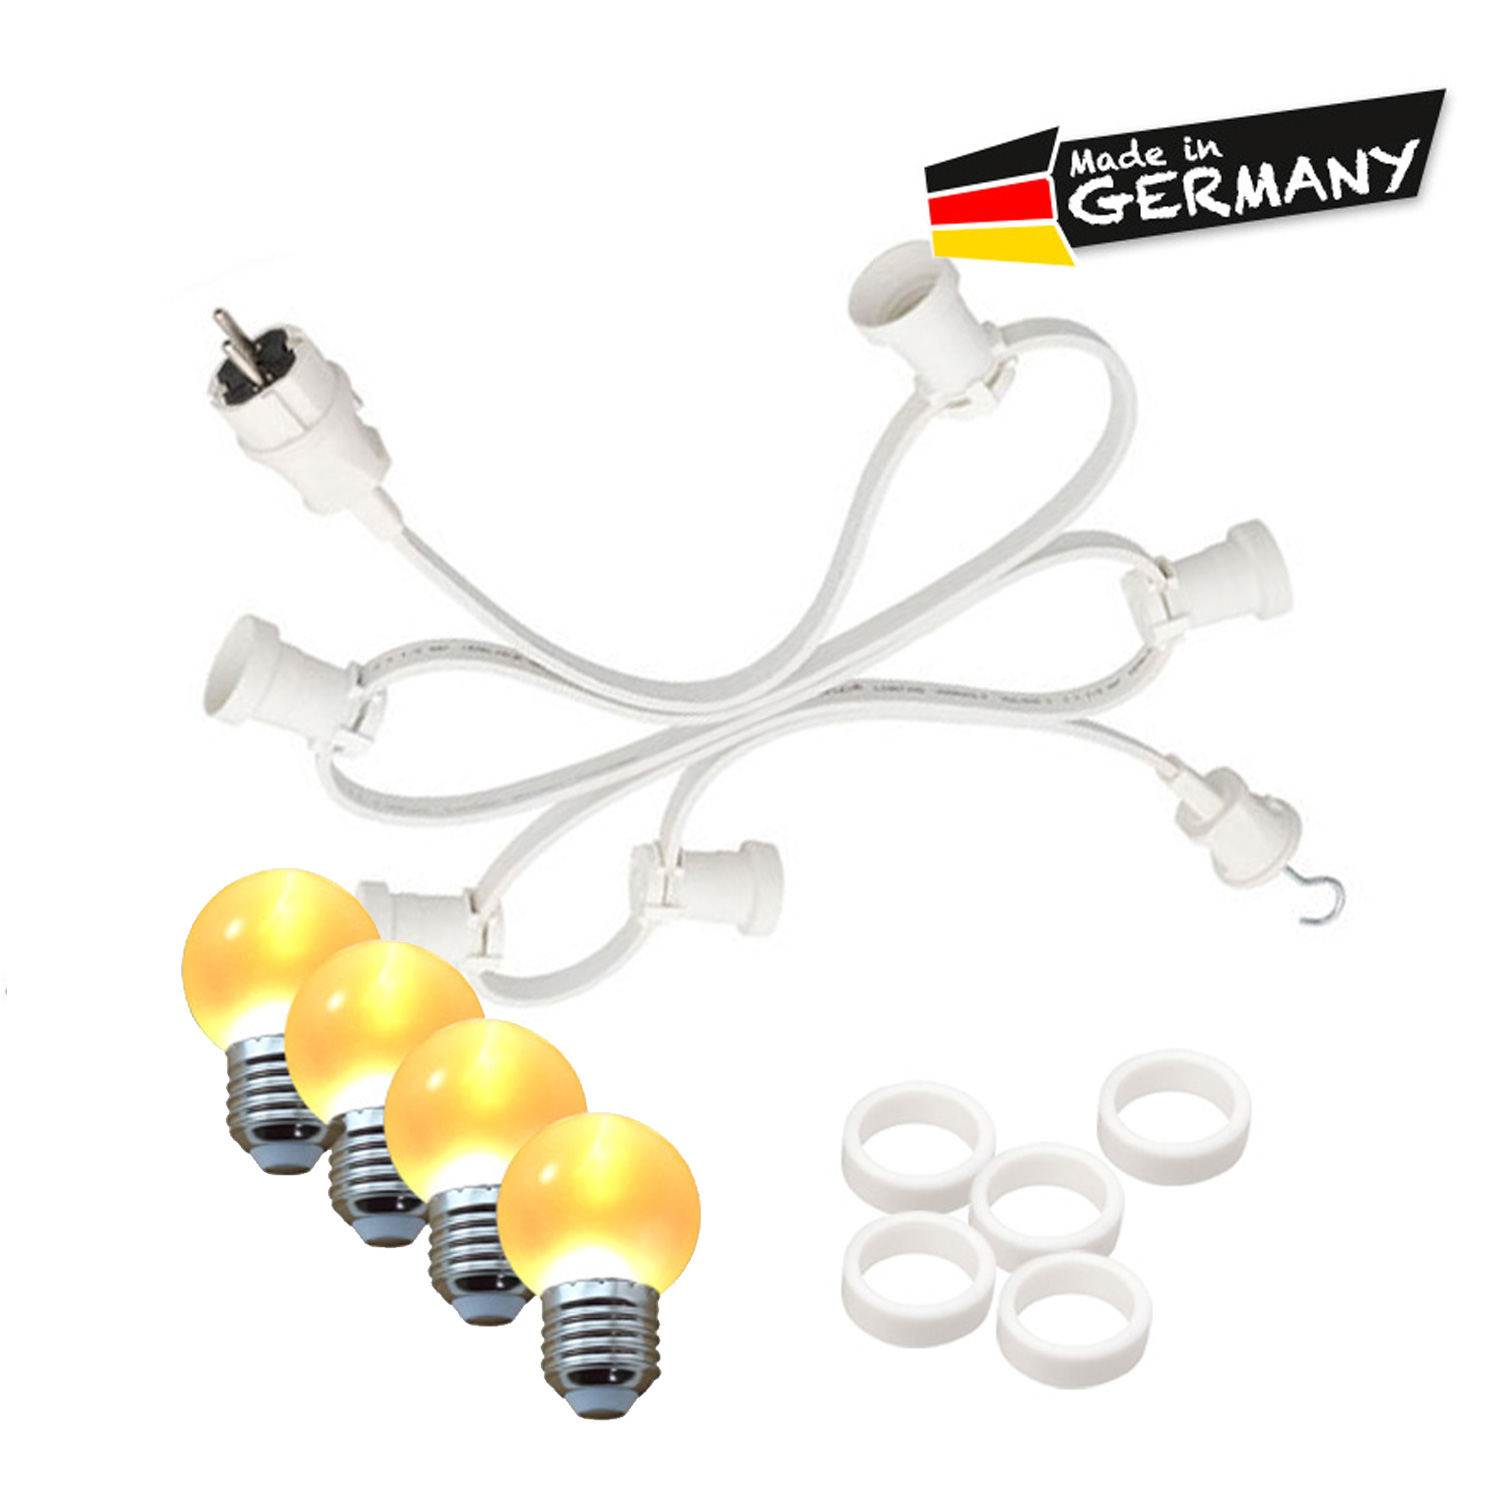 Illu-/Partylichterkette 20m - Außenlichterkette - Made in Germany - 40 x ultra-warmweiße LED Kugeln